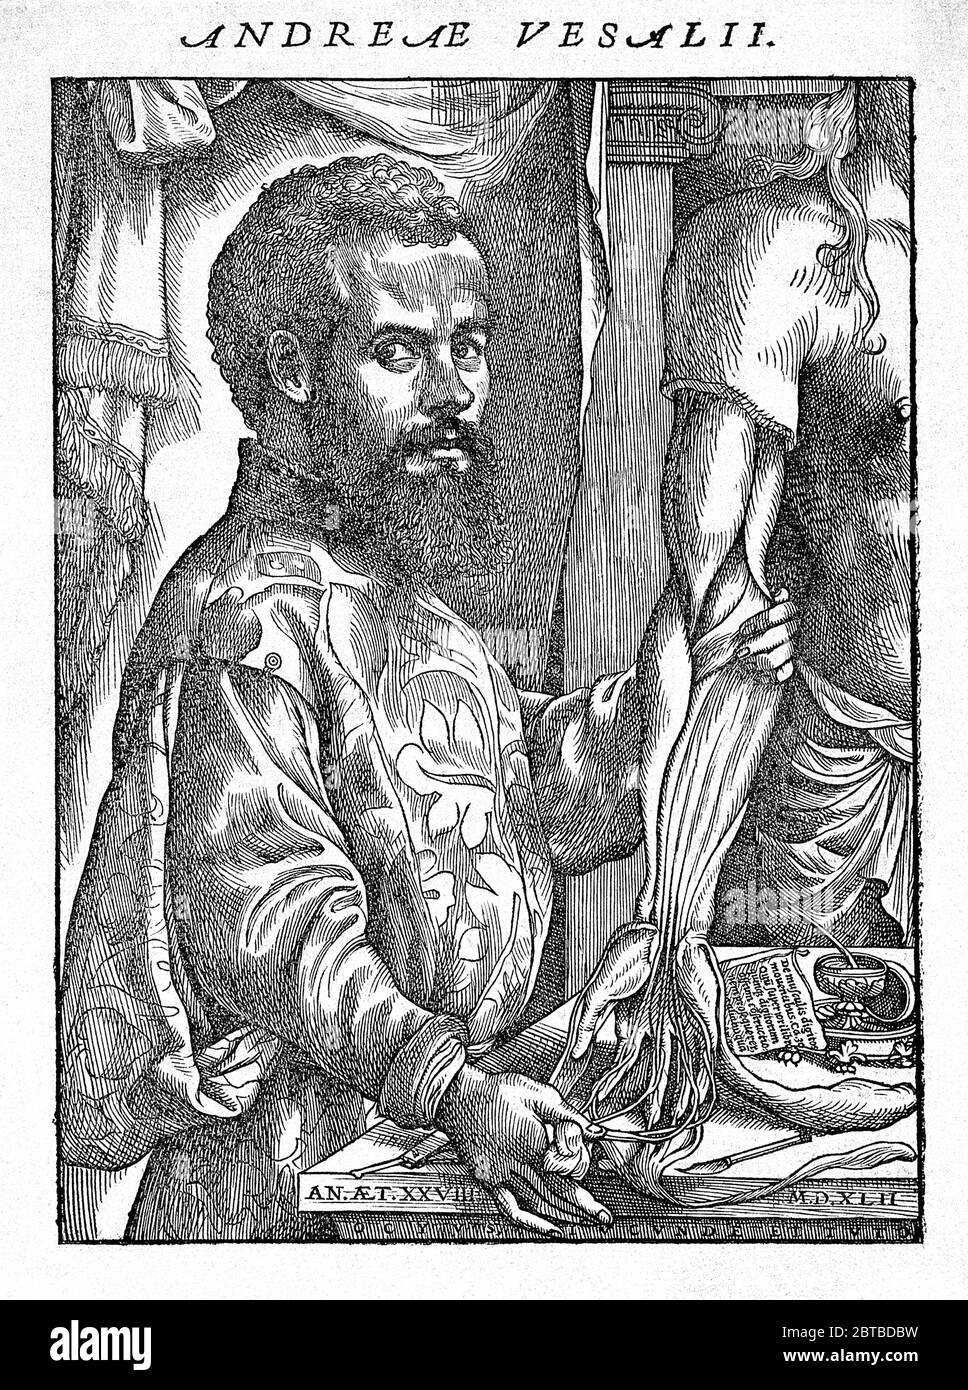 1543 , BELGIO :ANDREAS VESALIUS (1514 - 1564), anatomista fiammingo, alias Andrea VESALIO Andreas van Wesel . Autor di De Humani Corporis Fabrica Libri Septem (sul tessuto del corpo umano). Ritratto acquaforte , 28 anni dopo Jan Stephan Van calcar . - ANATOMIA - ANATOMIA - ANATOMISTA - ANATOMISTA - scienziato - ritratto - DOTTORE - MEDICO - MEDICINA - medicina - SCIENZA - SCIENZA - DOTTORE - MEDICO - illustrazione - illustrazione - incisione - incisione - barba - barba - BELGIO --- Archivio GBB Foto Stock